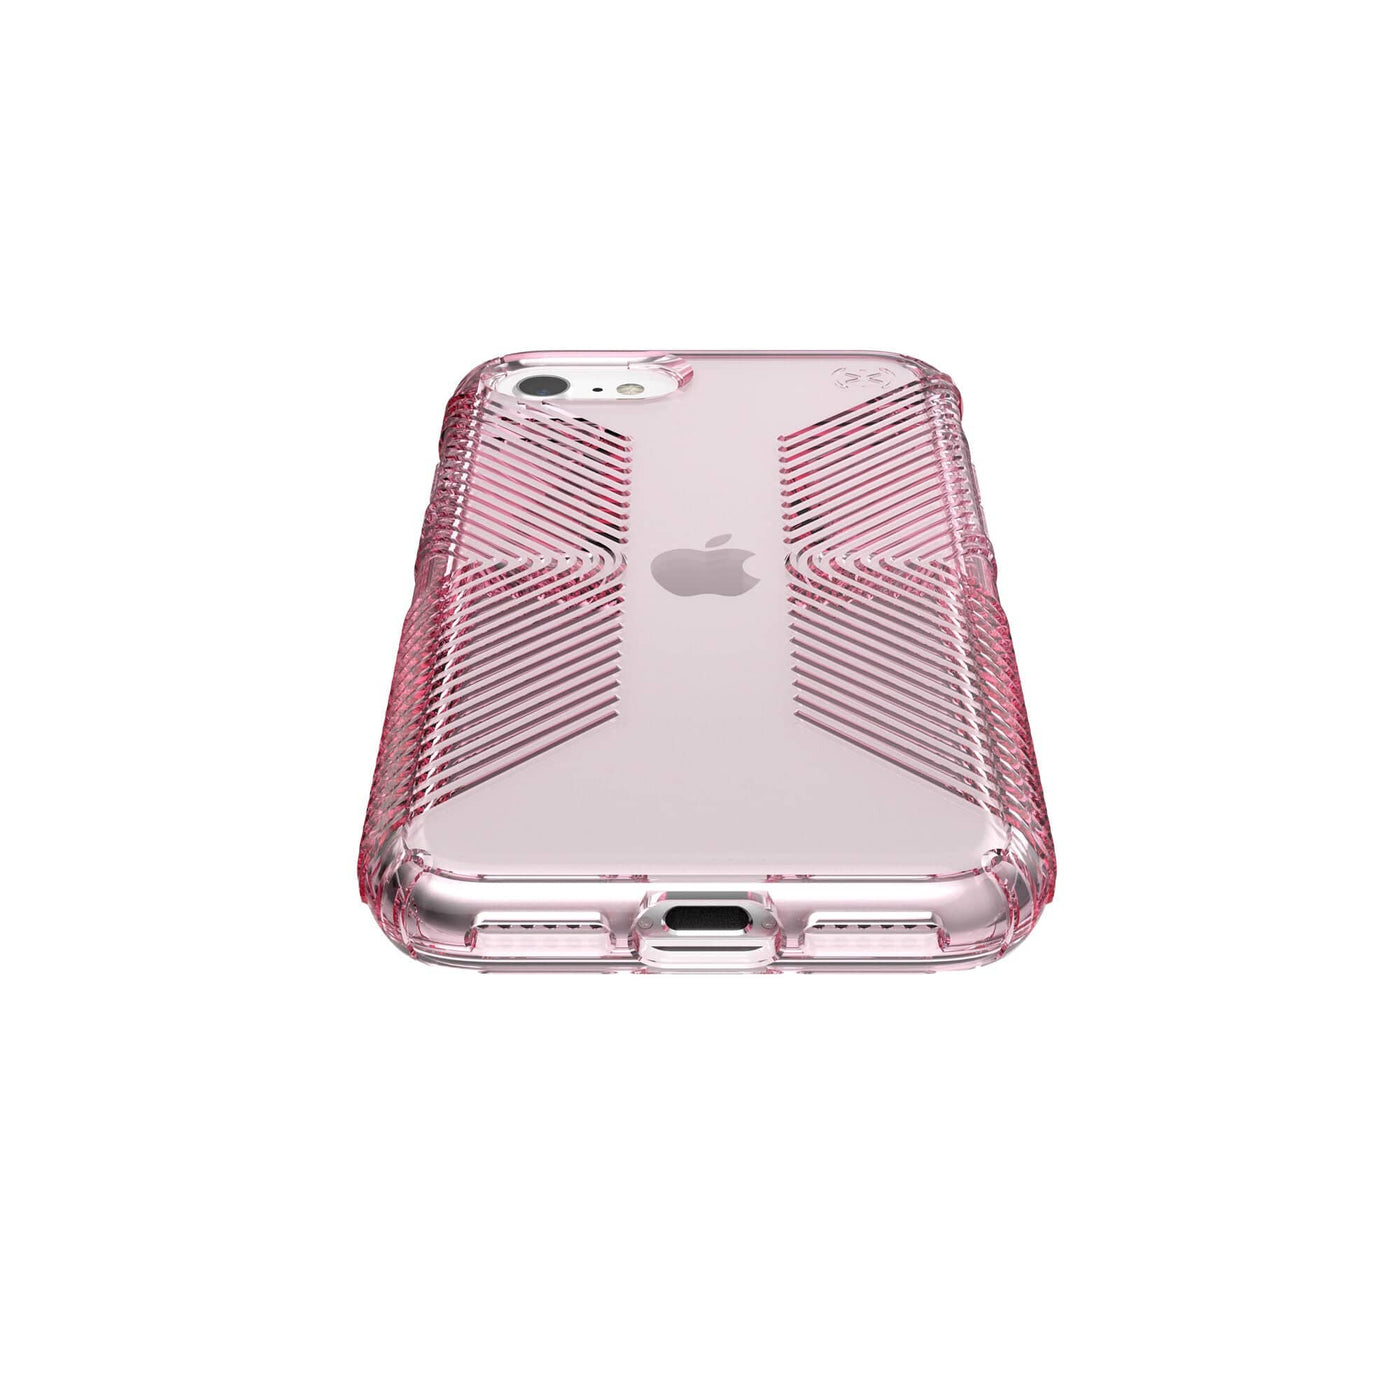 Supreme emblem pink iPhone SE 2020 Case